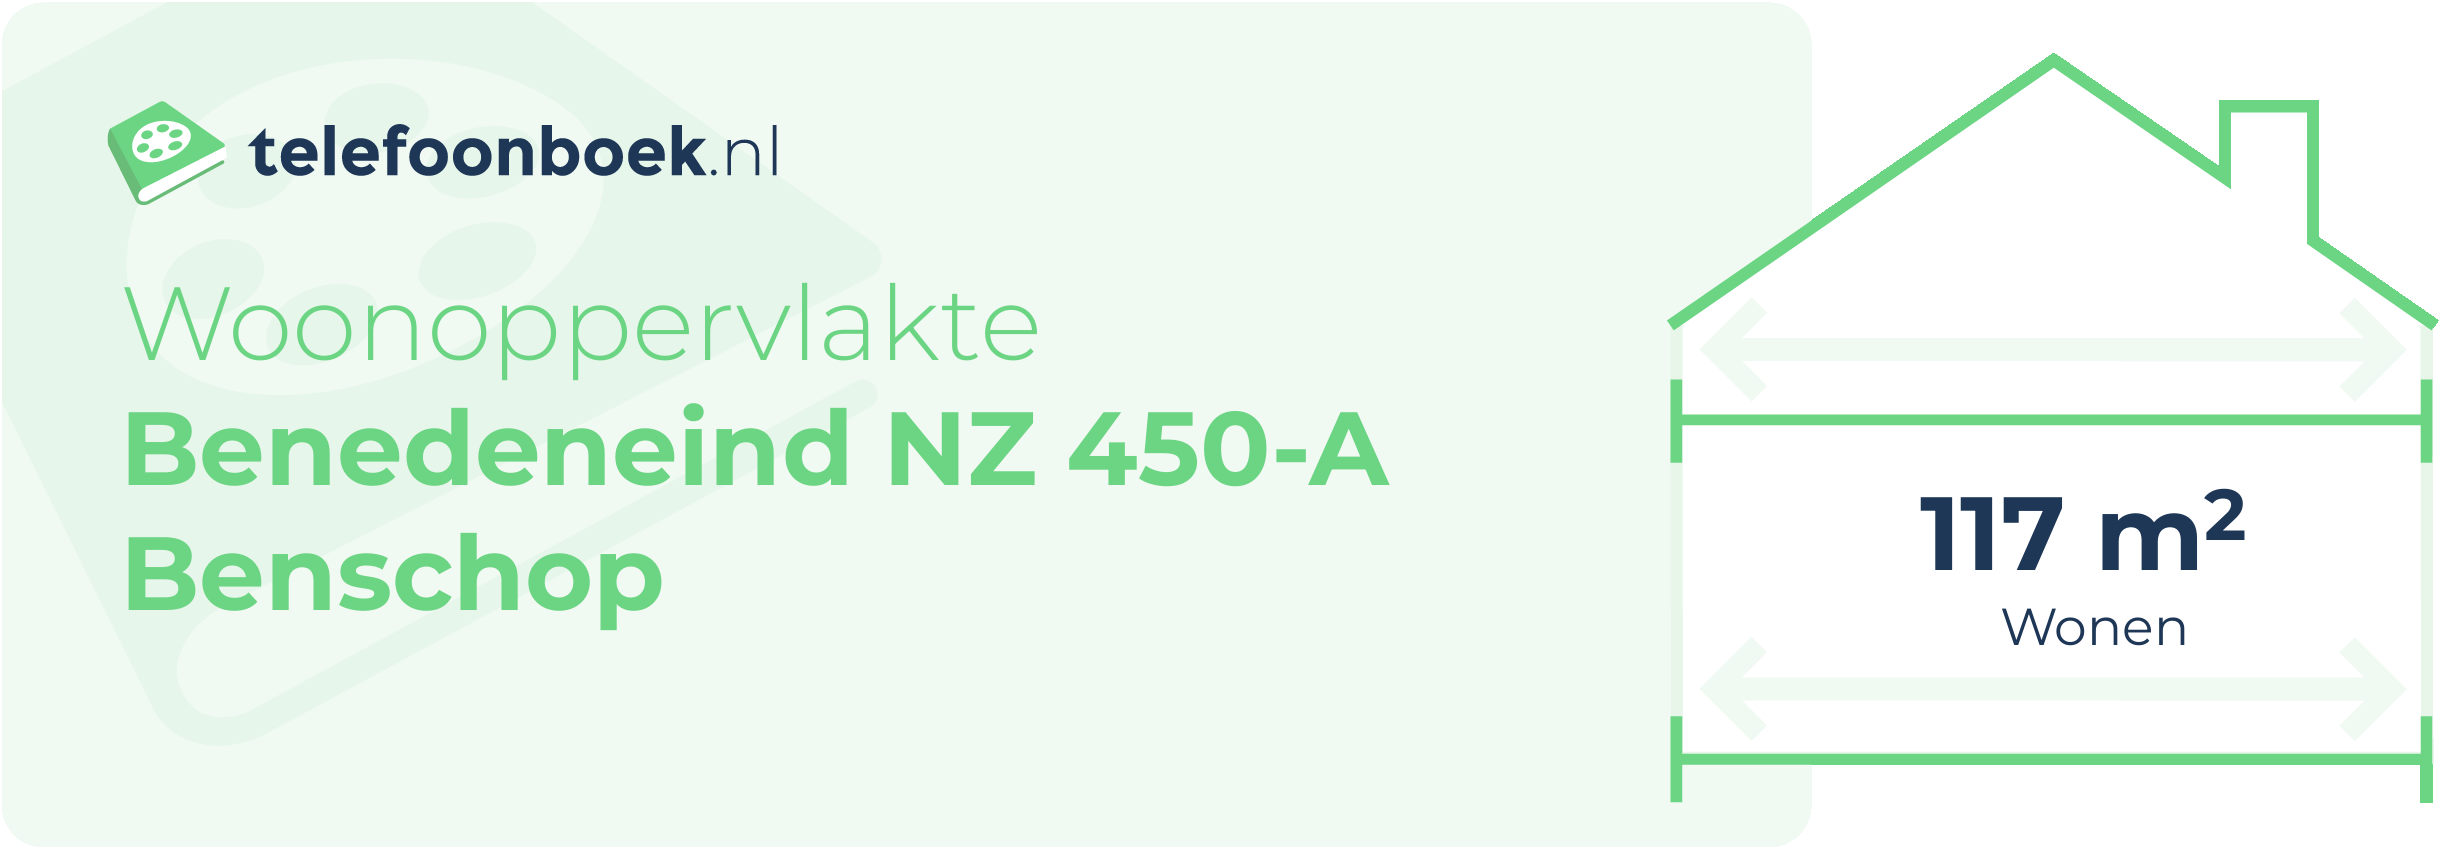 Woonoppervlakte Benedeneind NZ 450-A Benschop